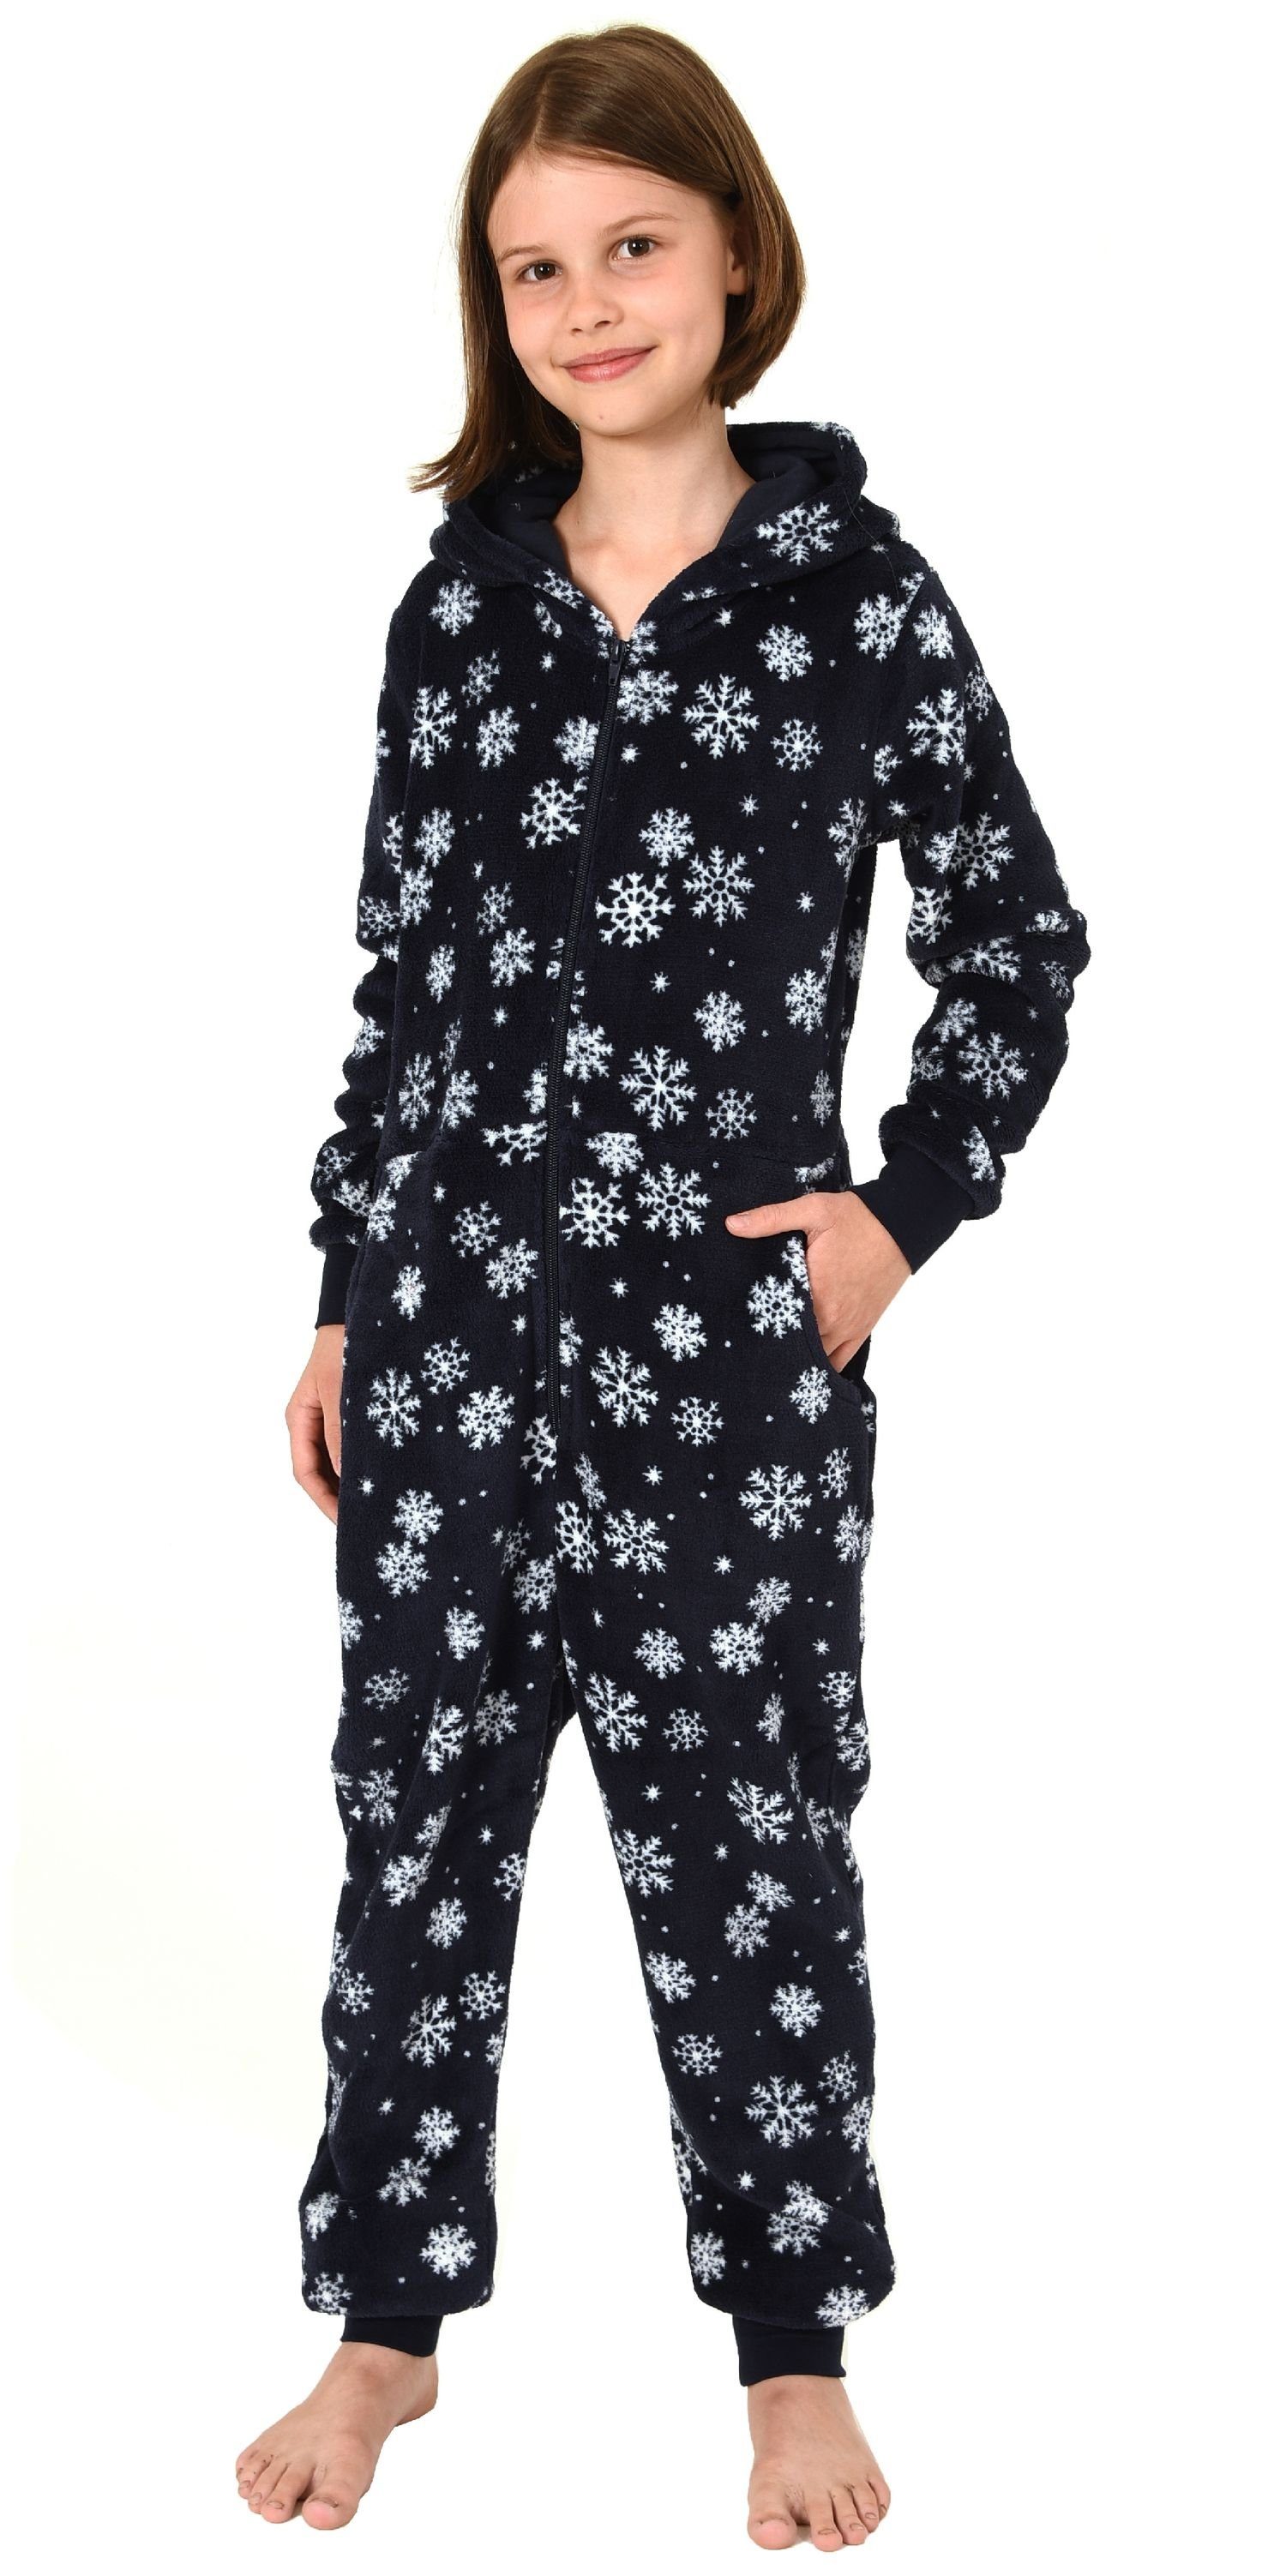 Eiskristall Normann Jumpsuit Optik Sterne Mädchen Pyjama Overall Schlafanzug navy Onesie